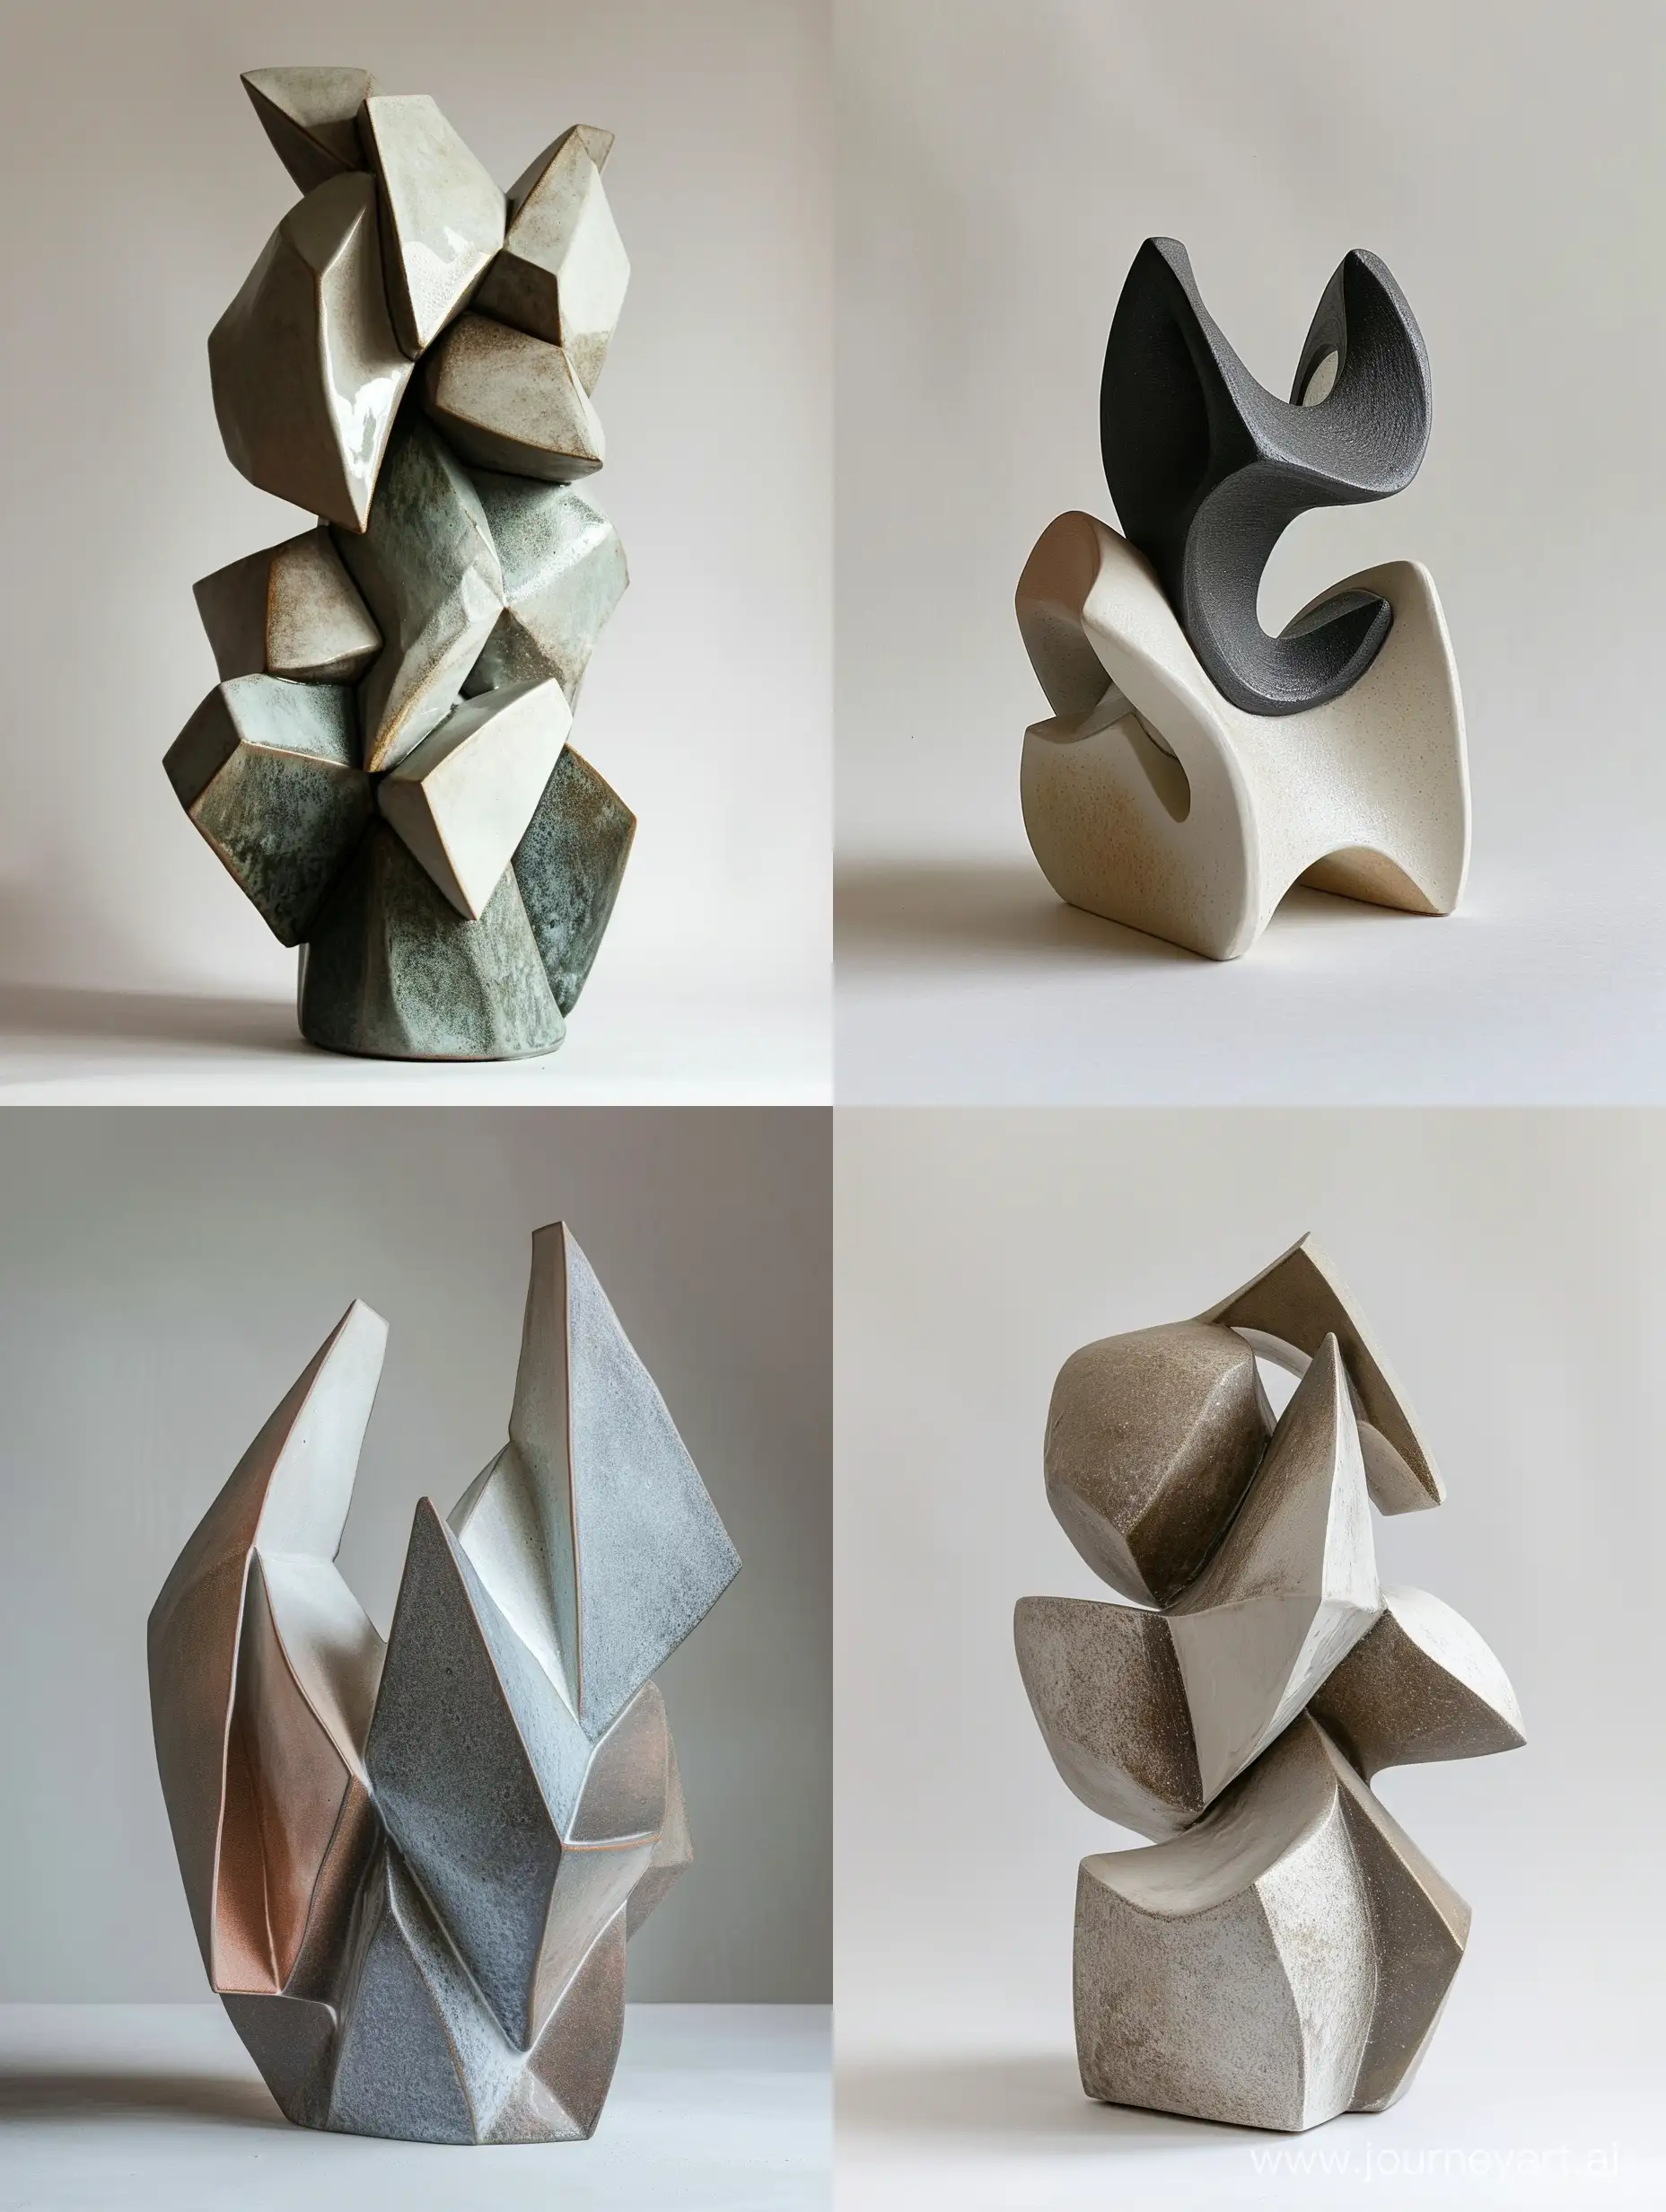 Абстрактная геометрическая скульптура керамика, абстрактные формы, объëмные детали, объëмные элементы, приглушëнные оттенки, в стиле 60-х, острые углы, скульптура из простых геометрических фигур